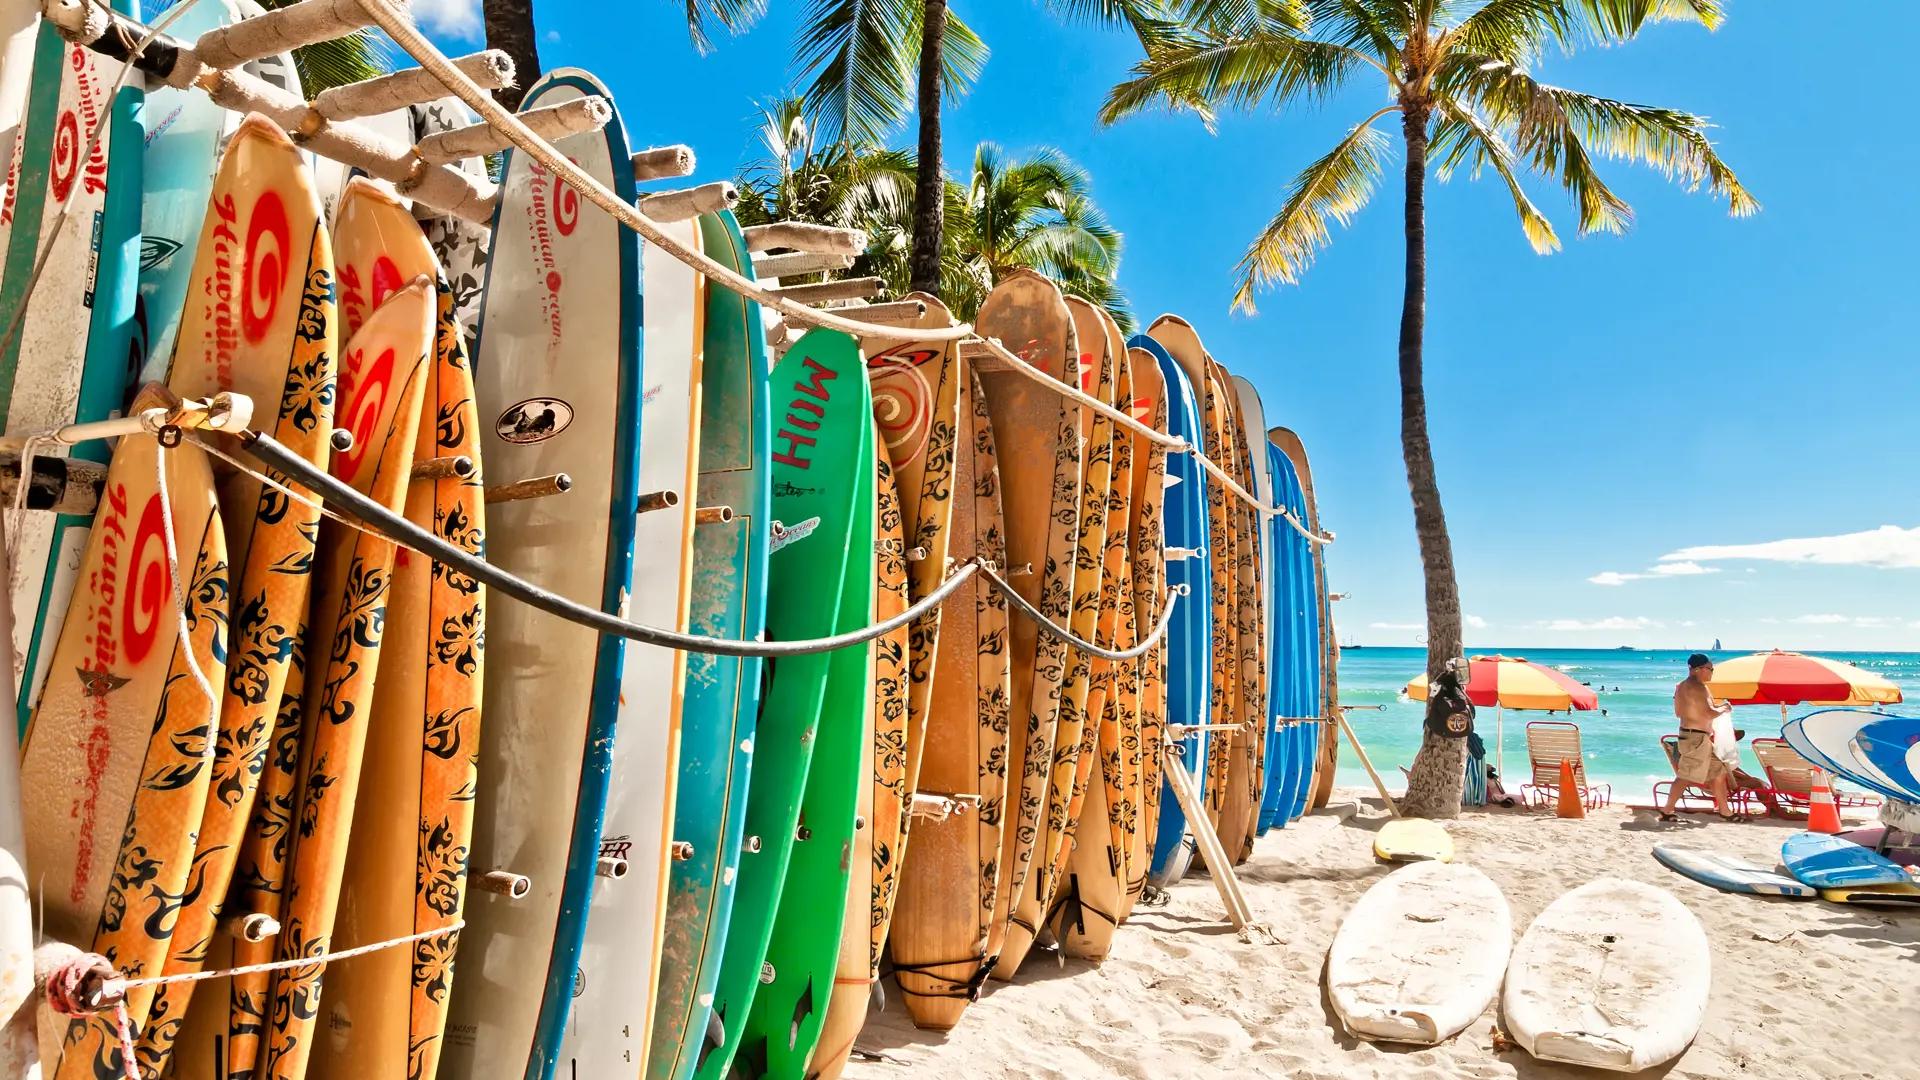 HONOLULU, OAHU - På Waikiki-stranden i Honolulu er der gjort klar til en gang surfing.